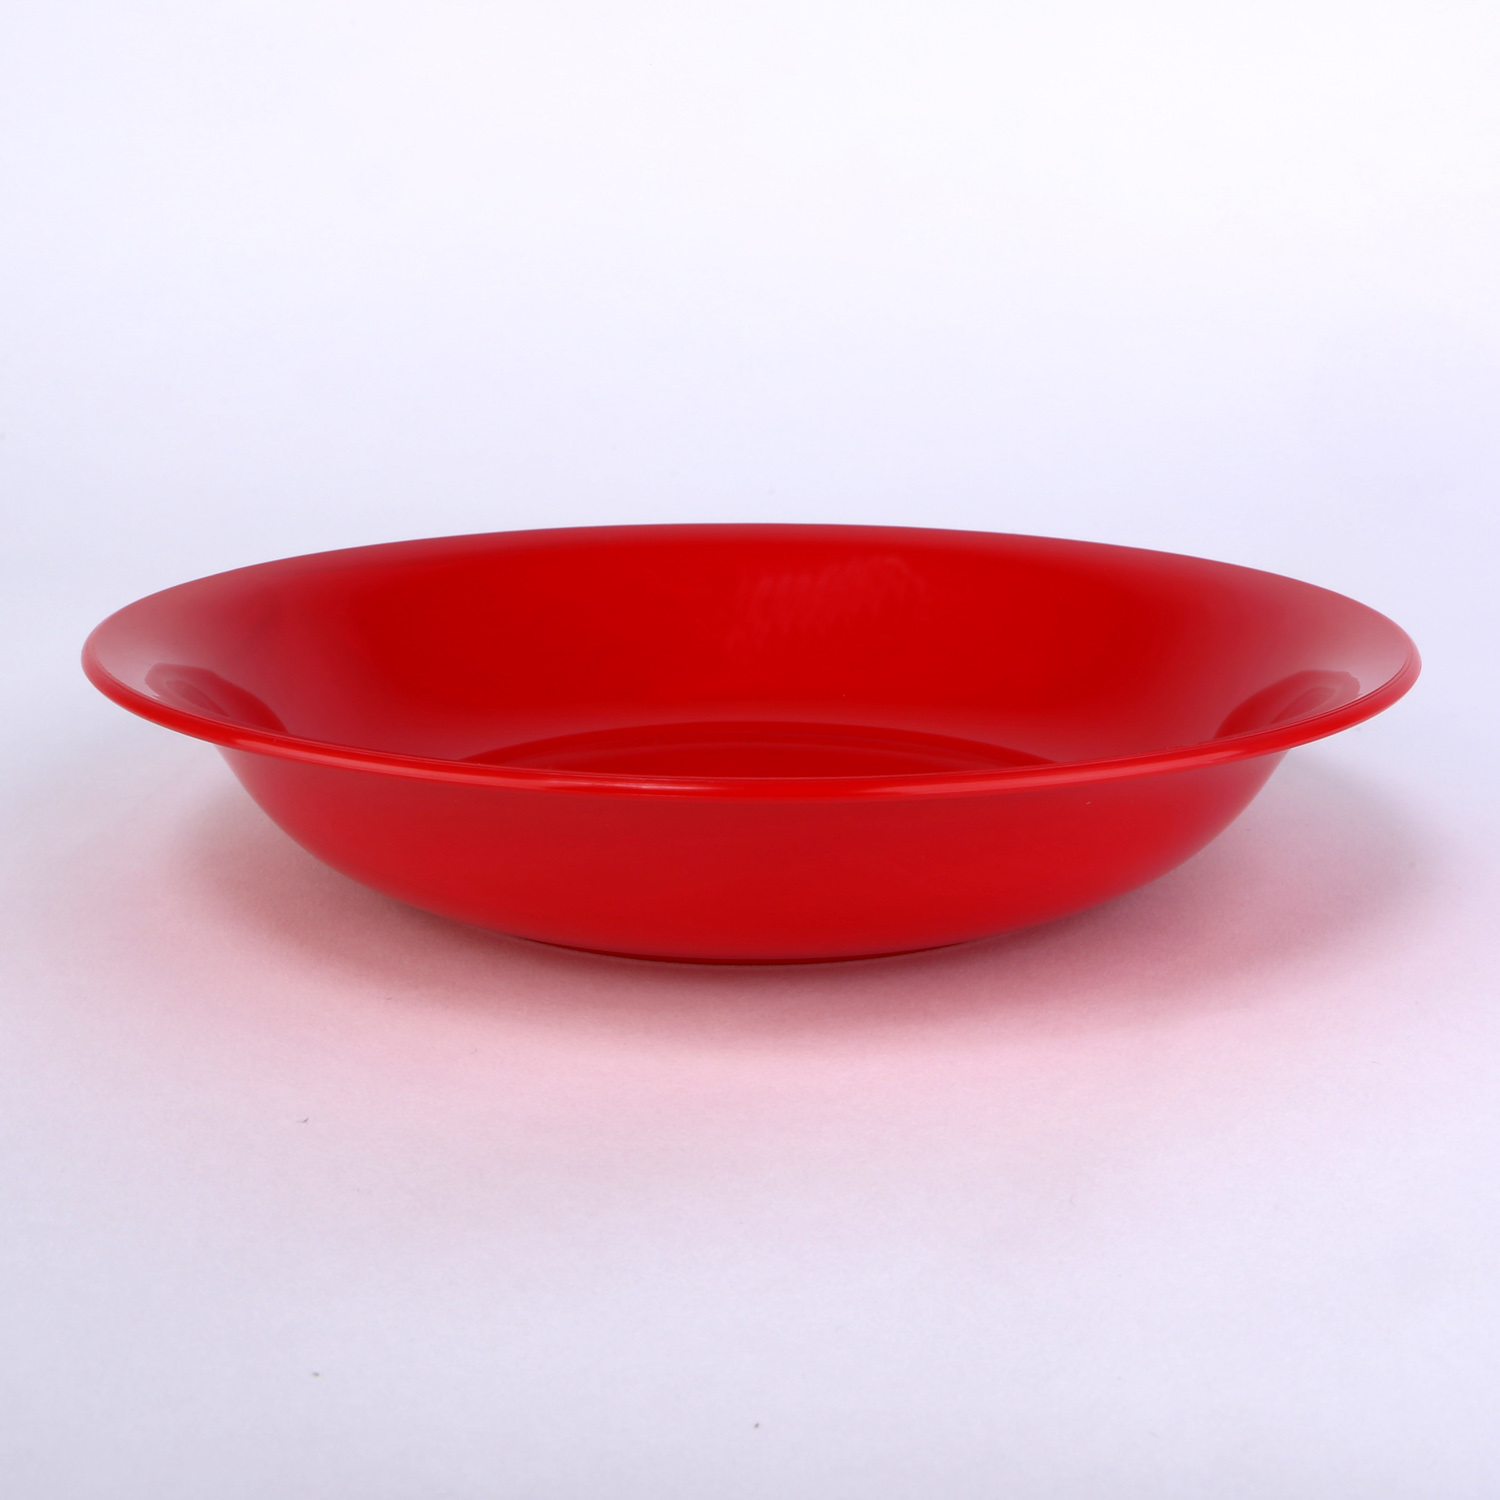 vaLon Zephyr Suppenteller 20,5 cm aus schadstofffreiem Kunststoff in der Farbe rot.